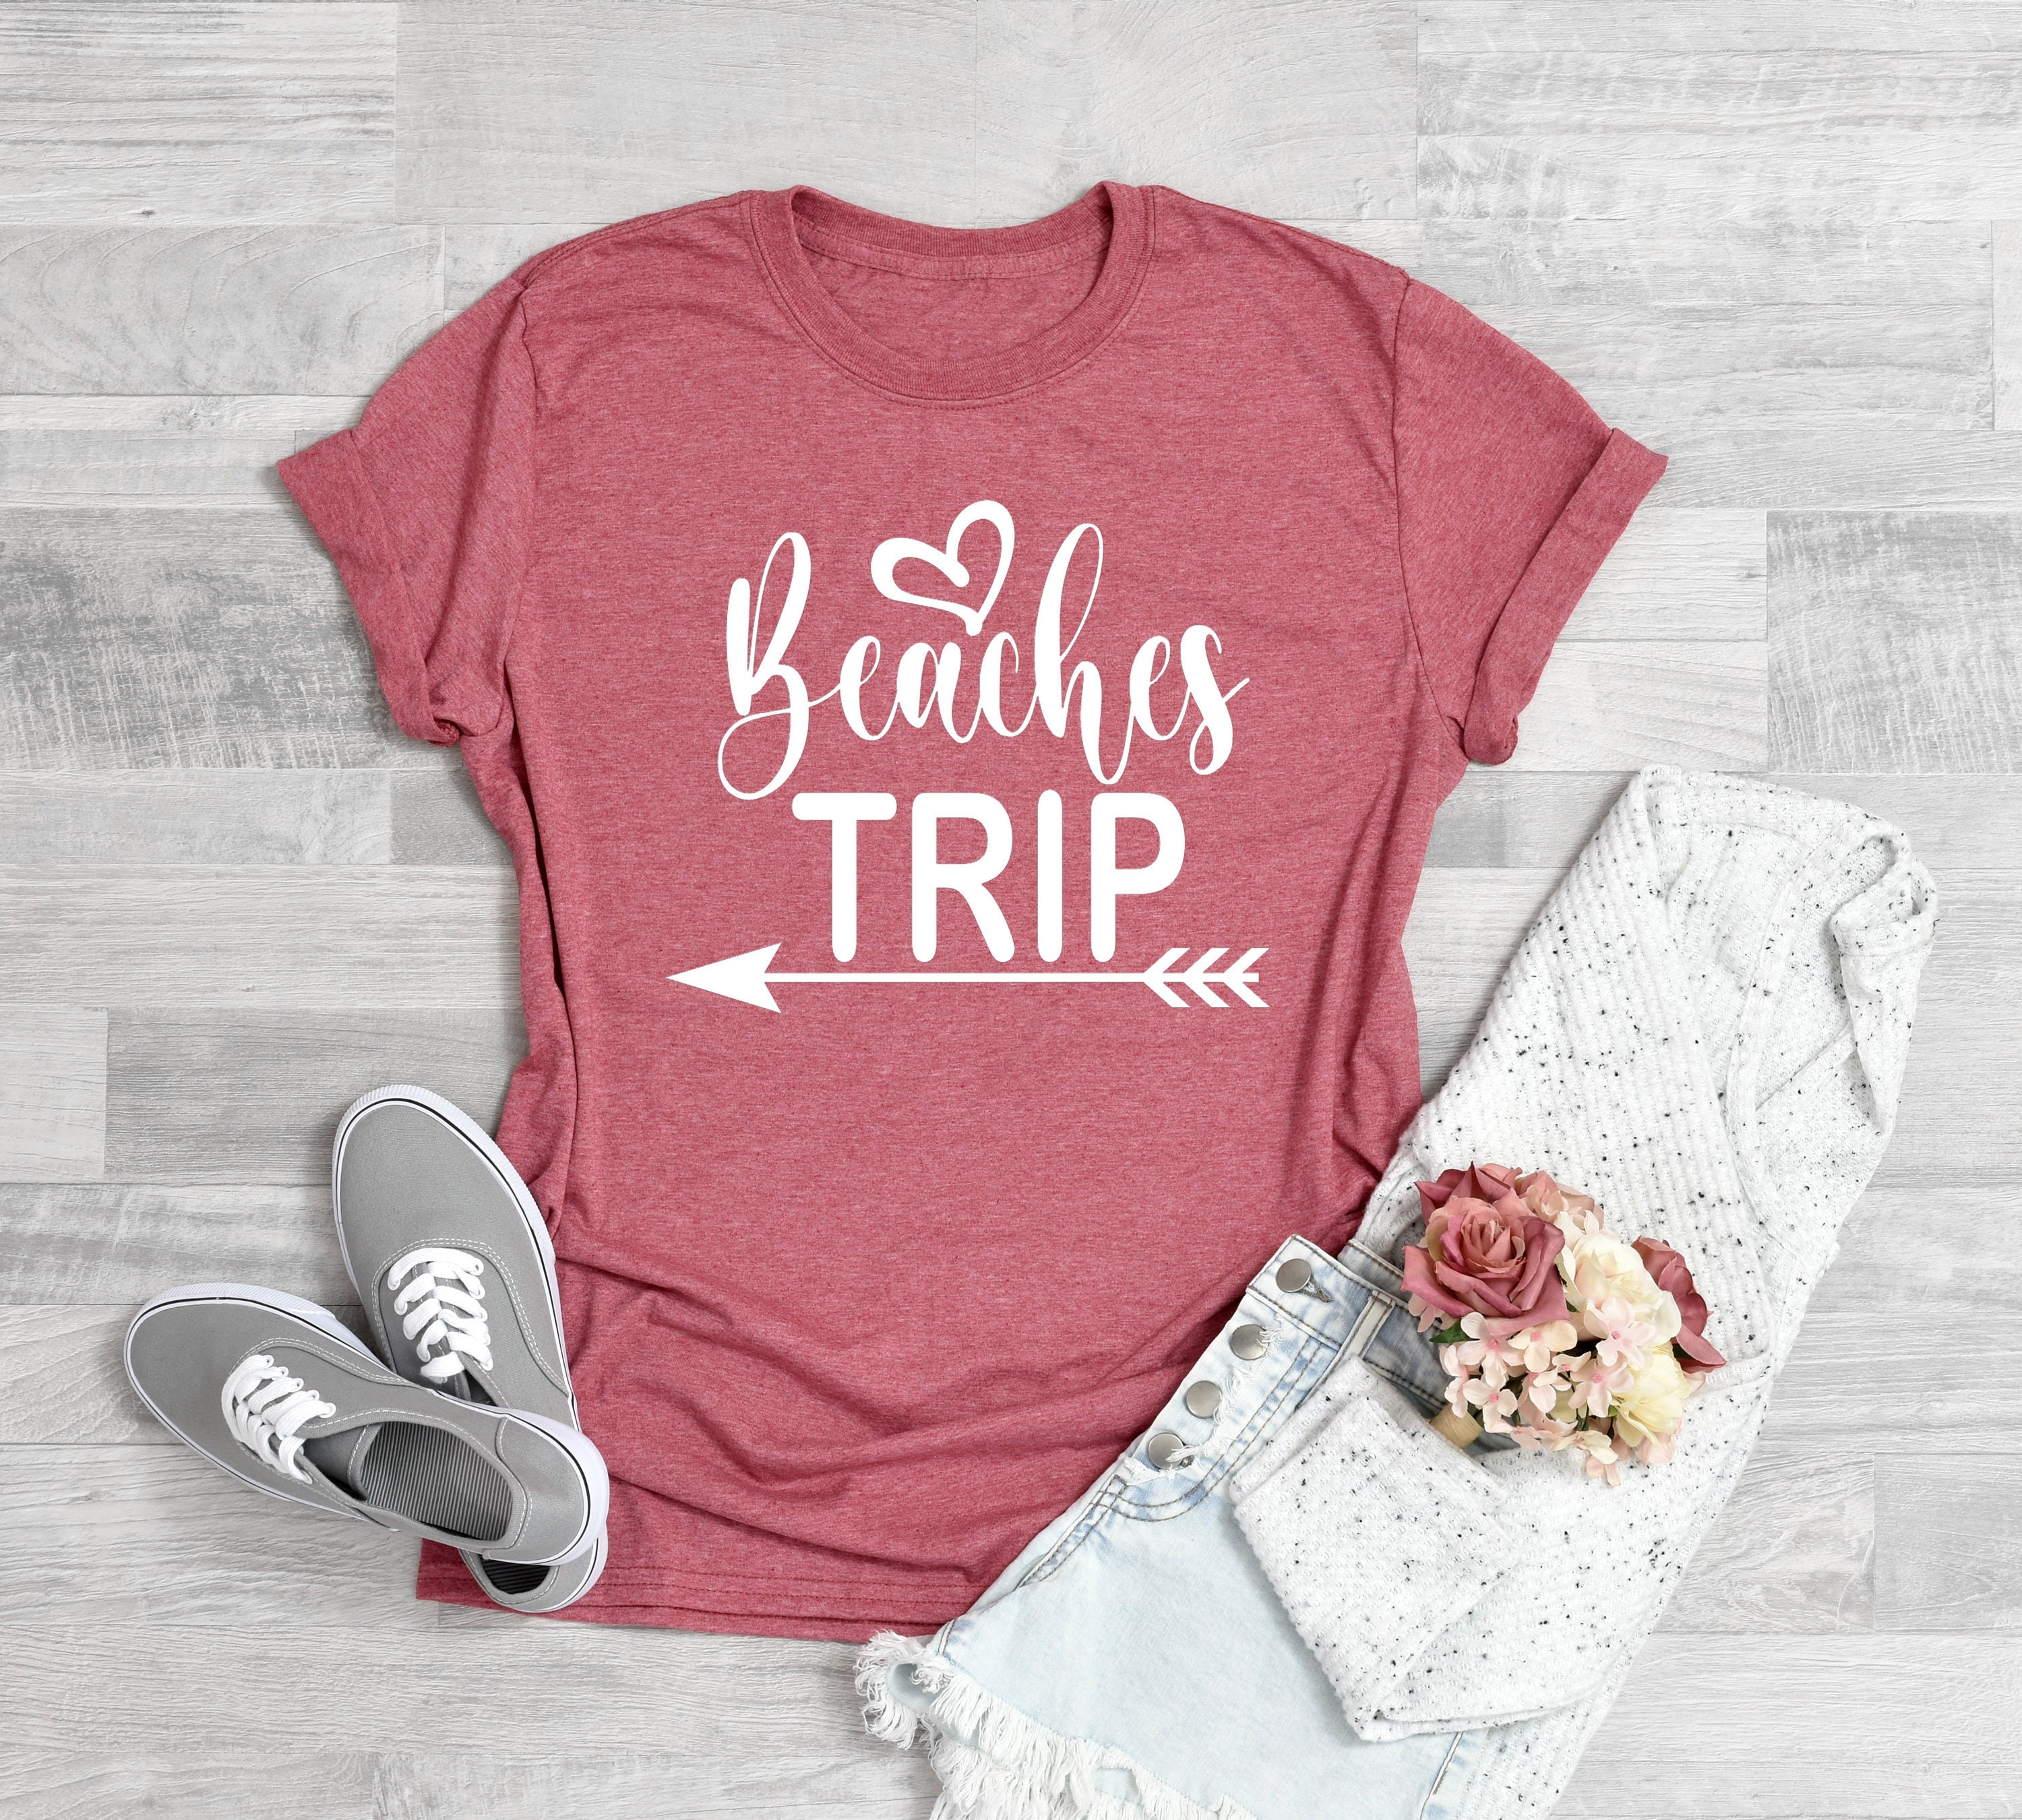 enjoy the trip t shirt